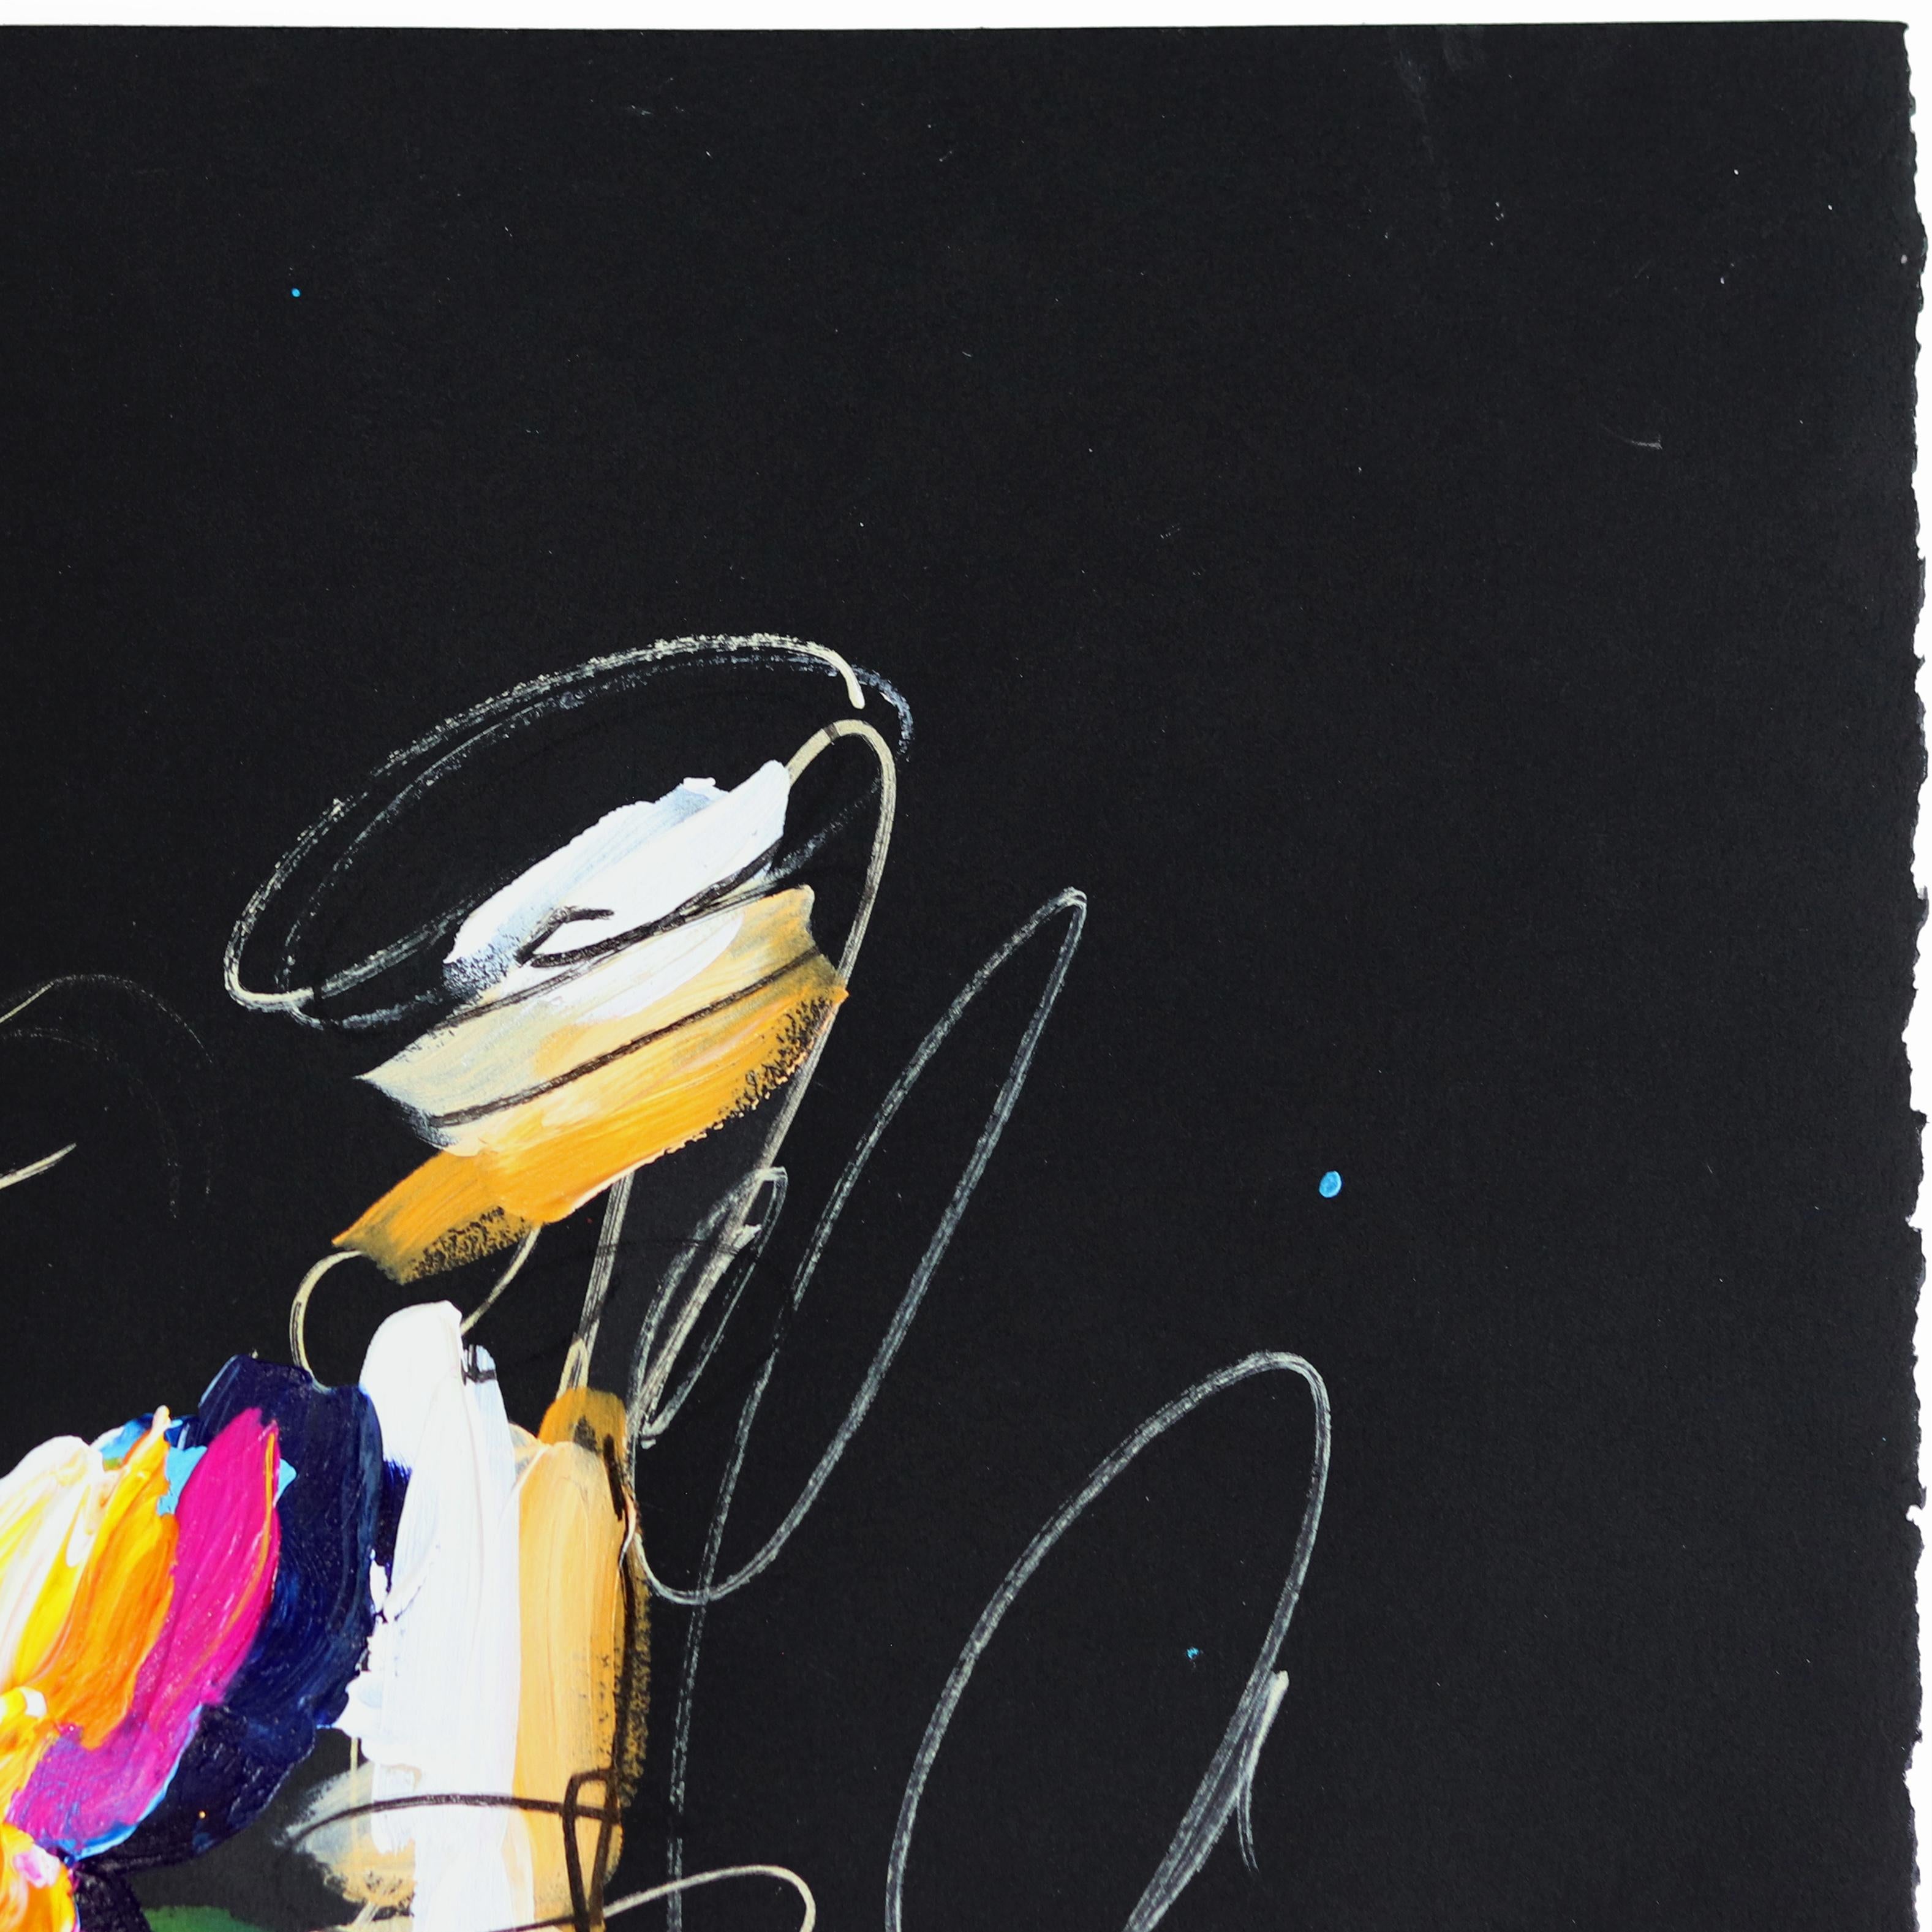 Die lebendigen Originalgemälde des texanischen Künstlers Ash Almonte sind vom abstrakten Expressionismus inspiriert und verbinden ihn mit einer optimistischen zeitgenössischen Perspektive. Almonte lässt sich von schönen Farben, unglaublicher Musik